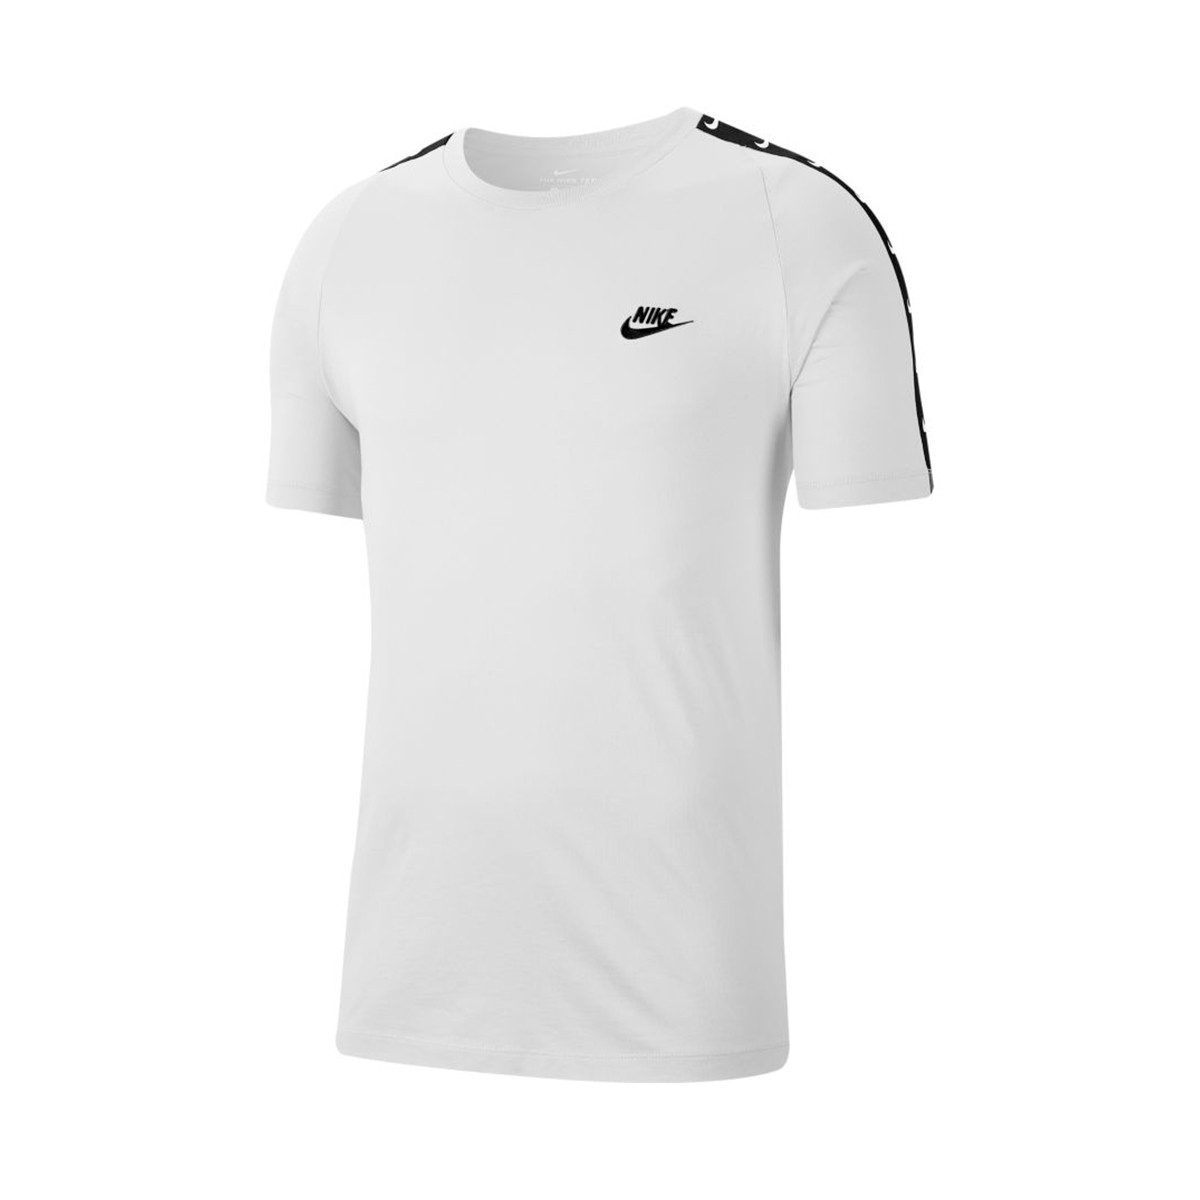 Camiseta Nike Store, 53% OFF | www.colegiogamarra.com